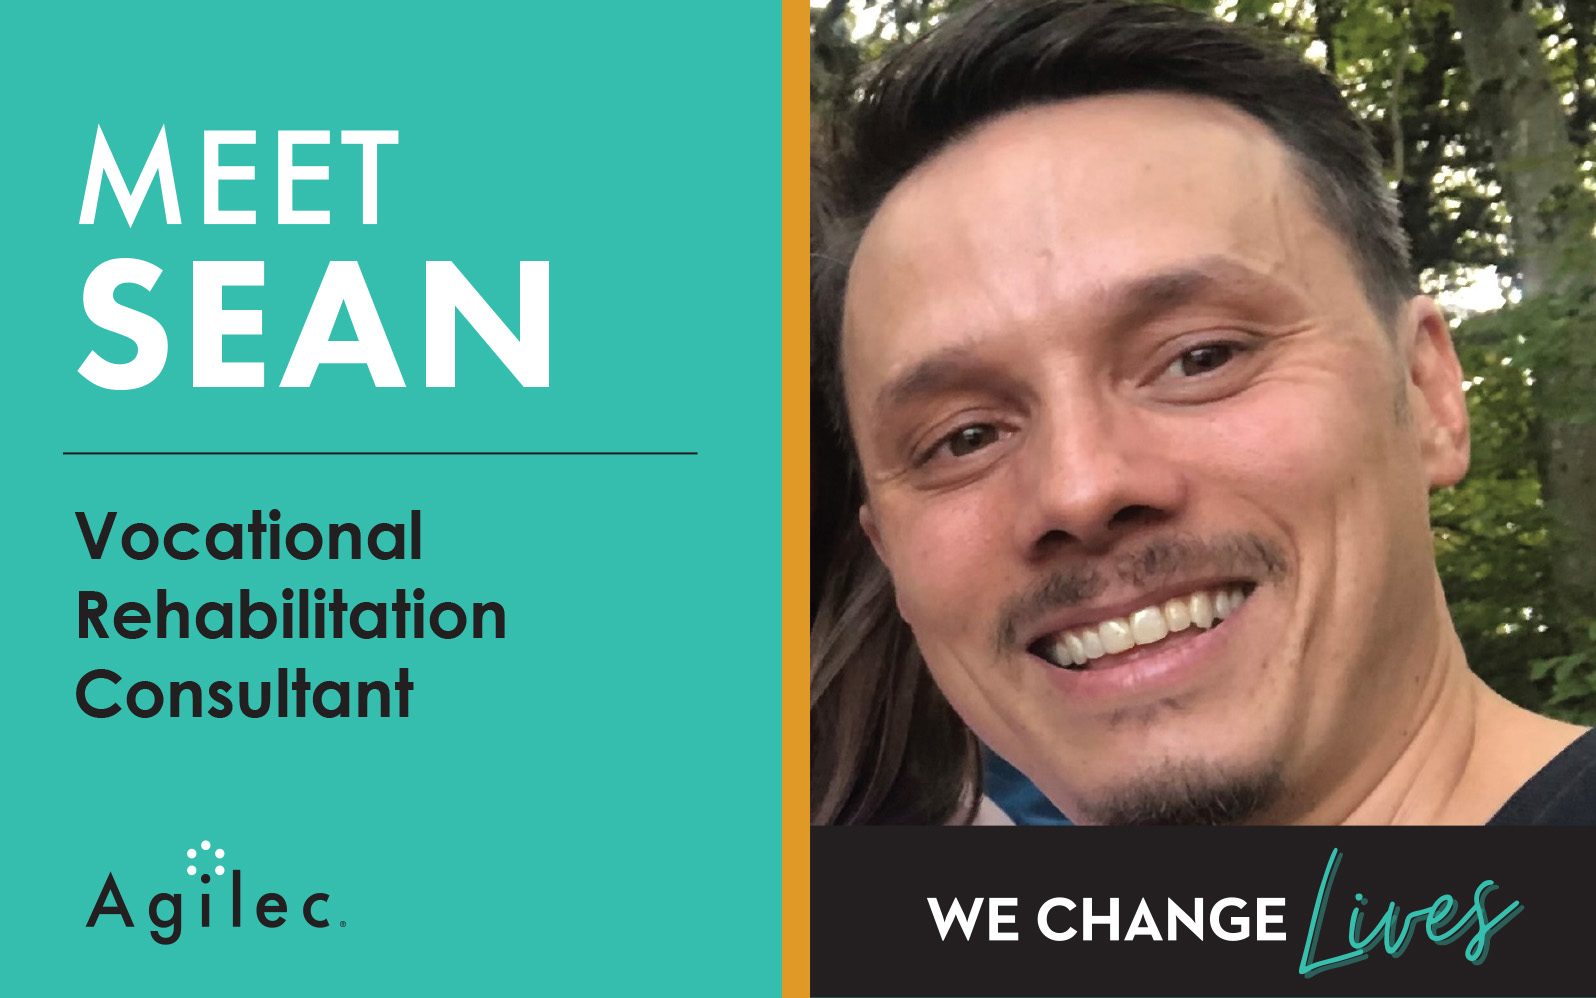 Meet Sean a Vocational Rehabilitation Consultant at Agilec